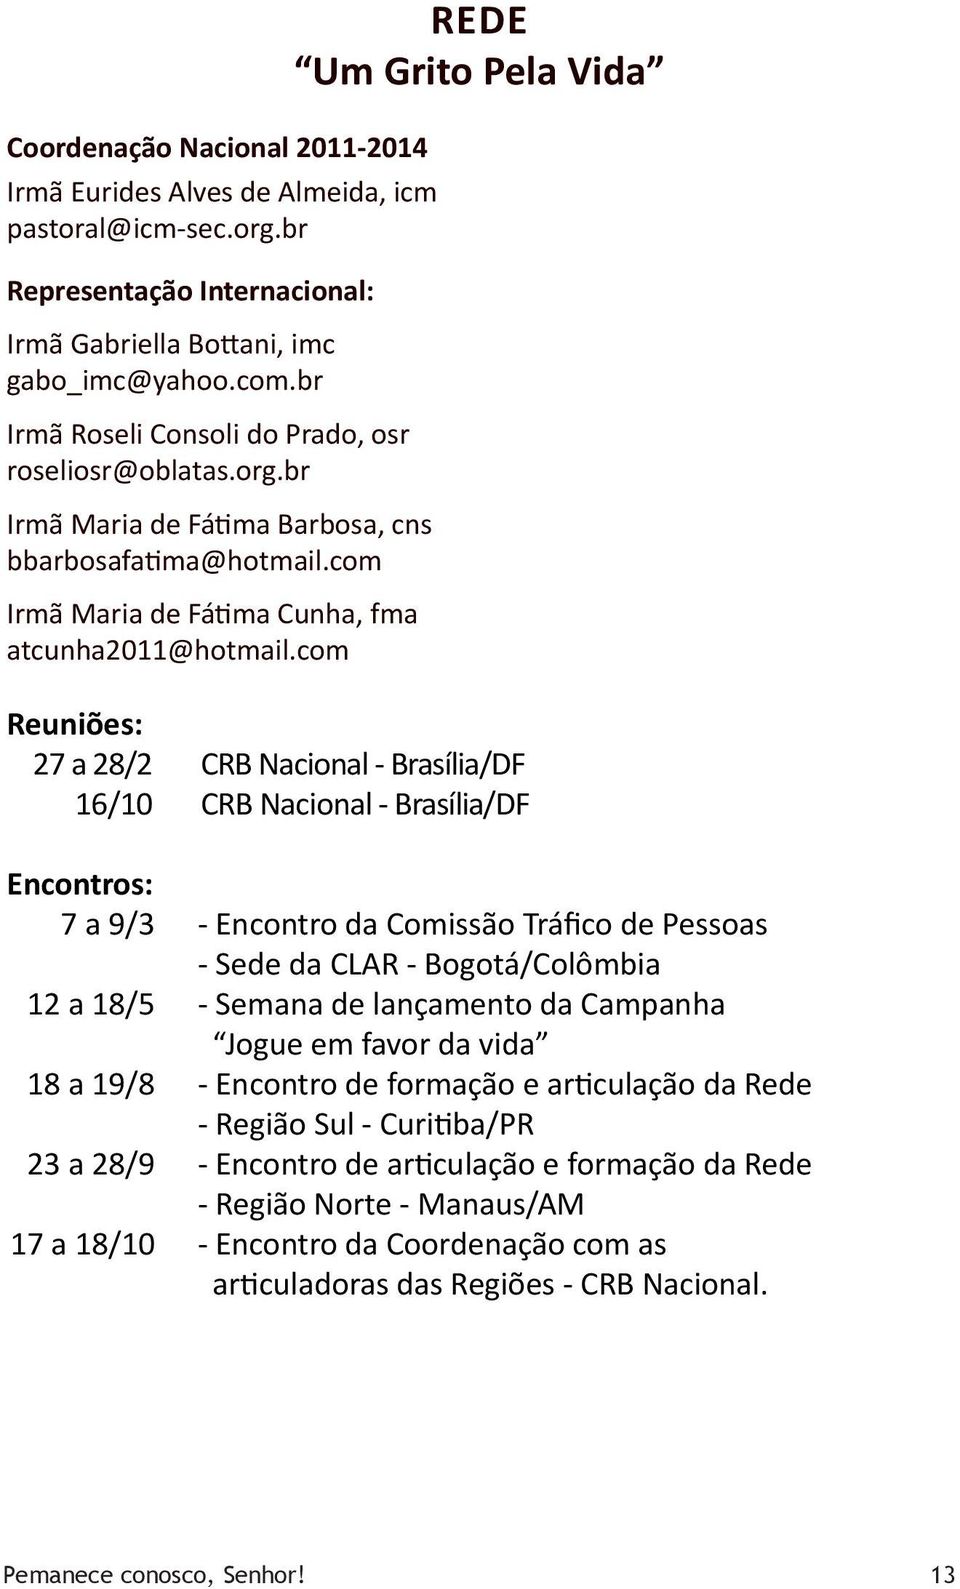 com Rede Um Grito Pela Vida Reuniões: 27 a 28/2 CRB Nacional - Brasília/DF 16/10 CRB Nacional - Brasília/DF Encontros: 7 a 9/3 - Encontro da Comissão Tráfico de Pessoas - Sede da CLAR -